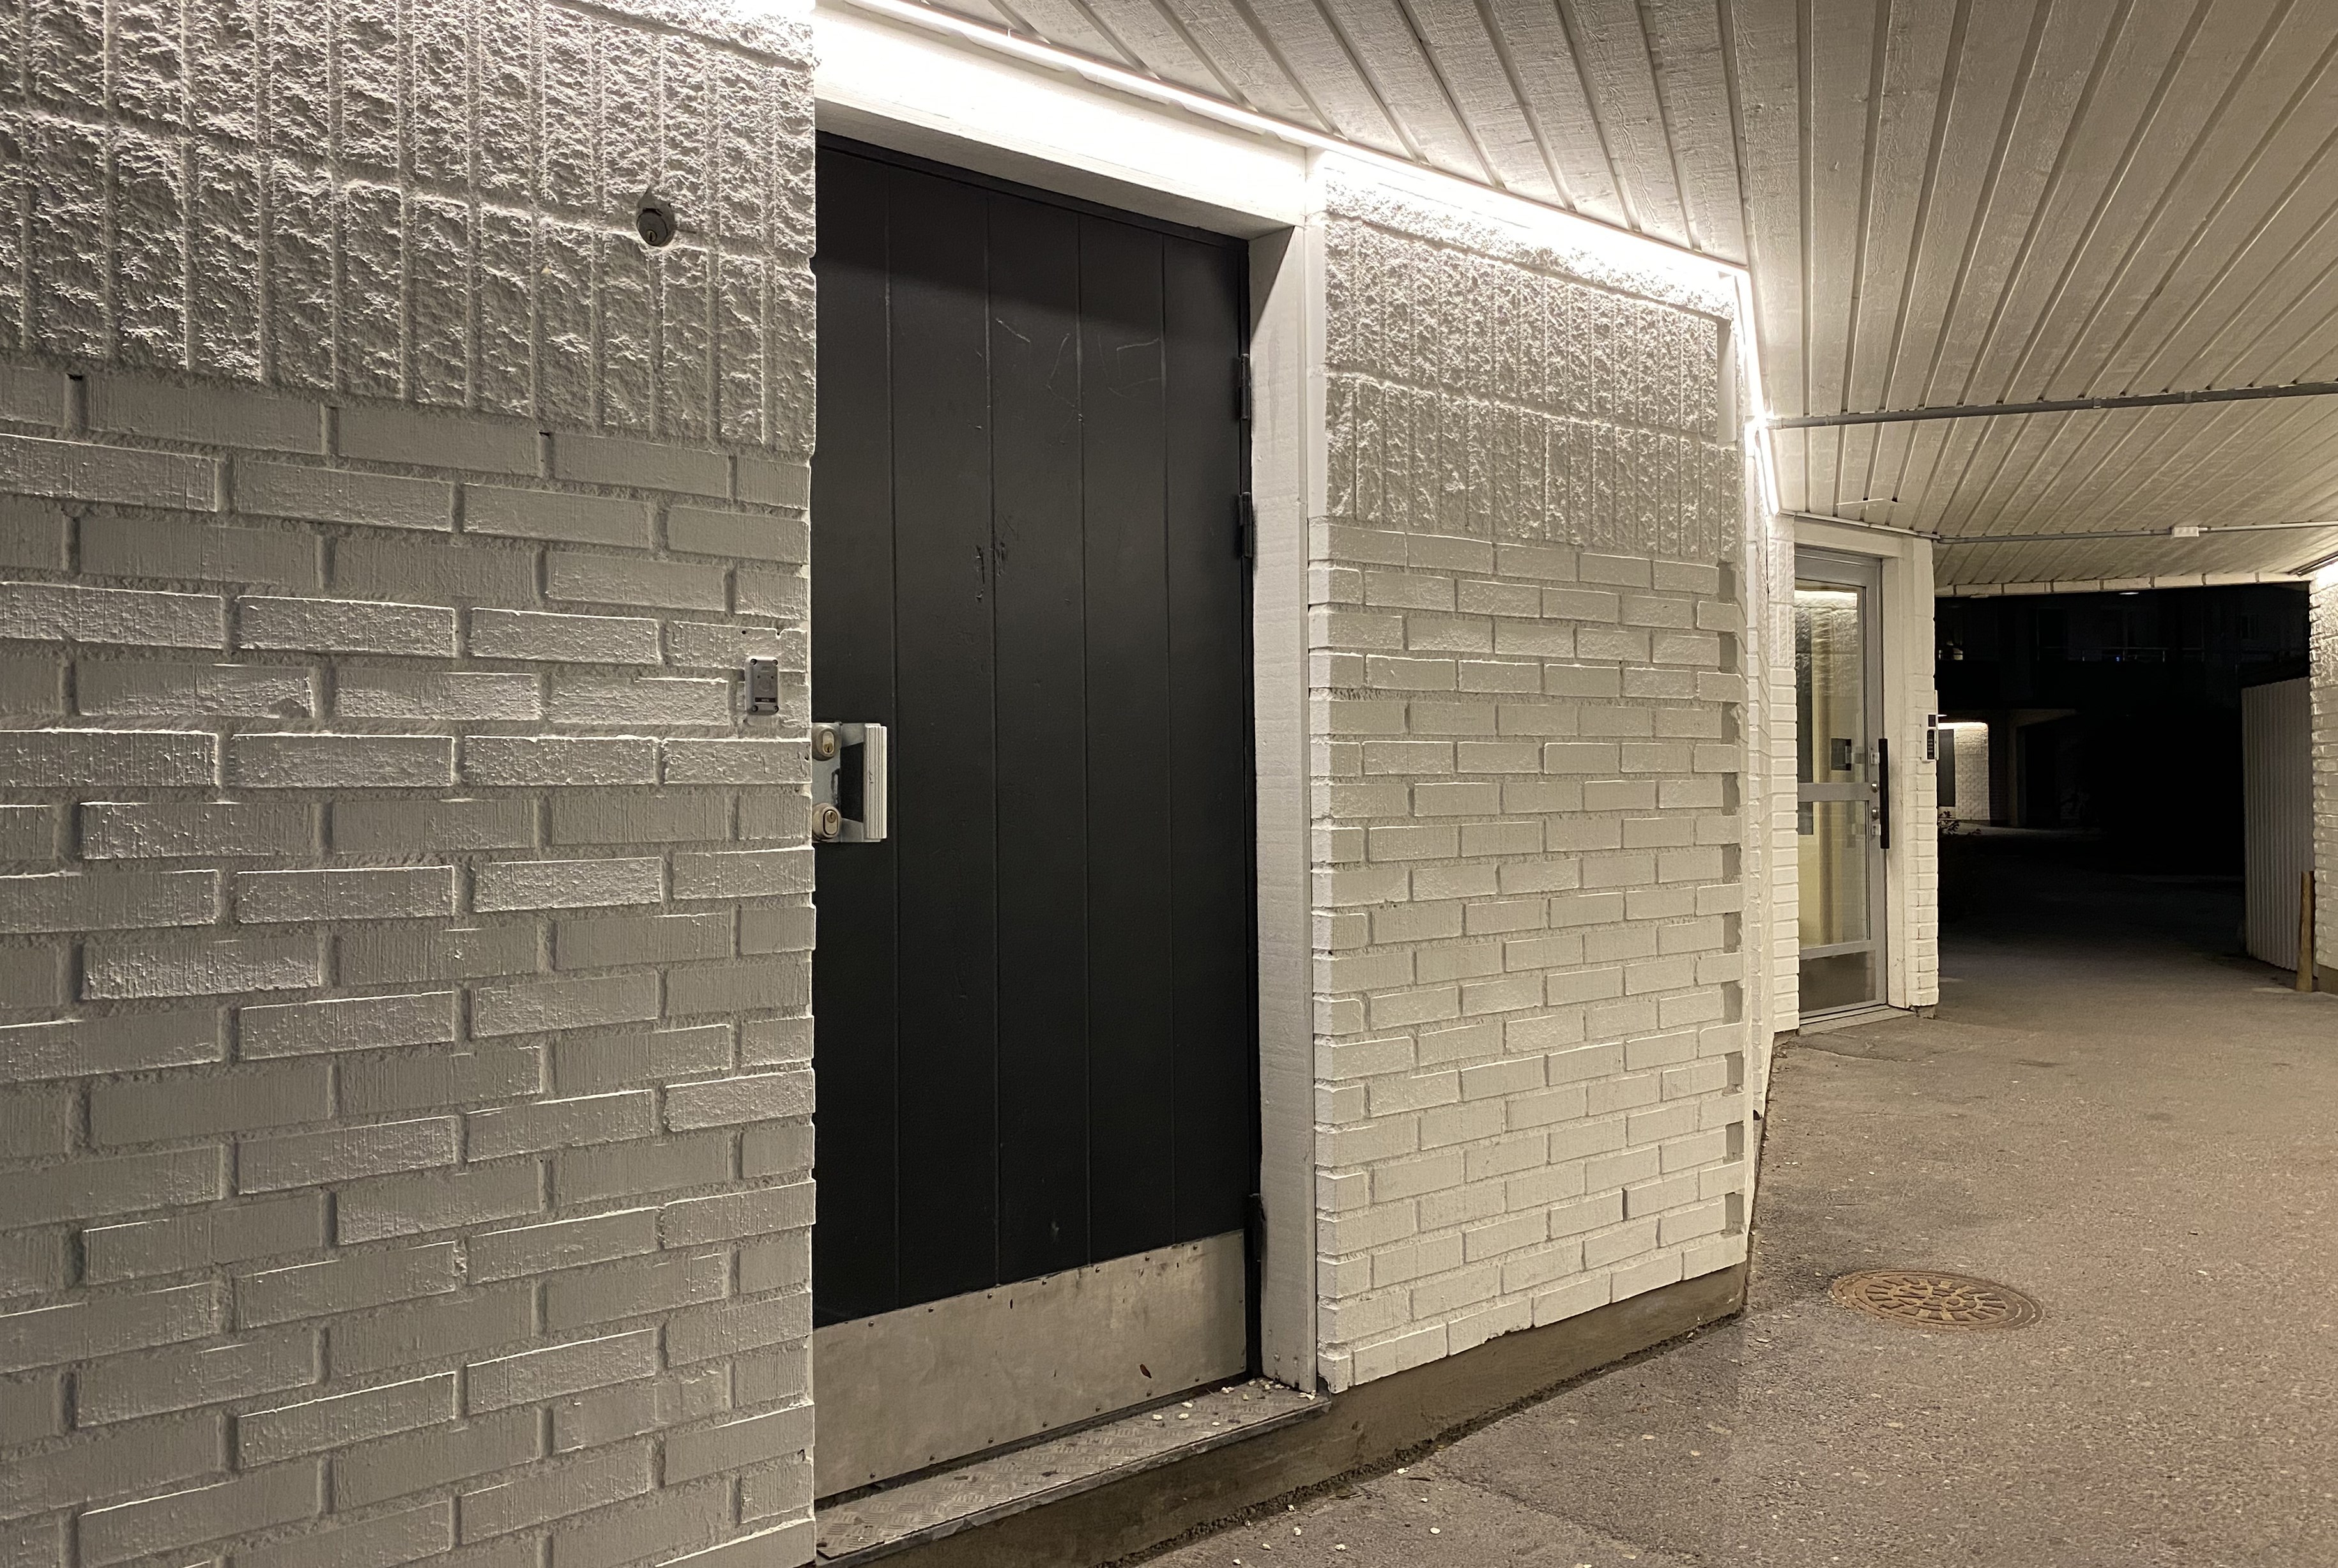 Portal i flerbostadshus med vitt tegel och brun dörr.